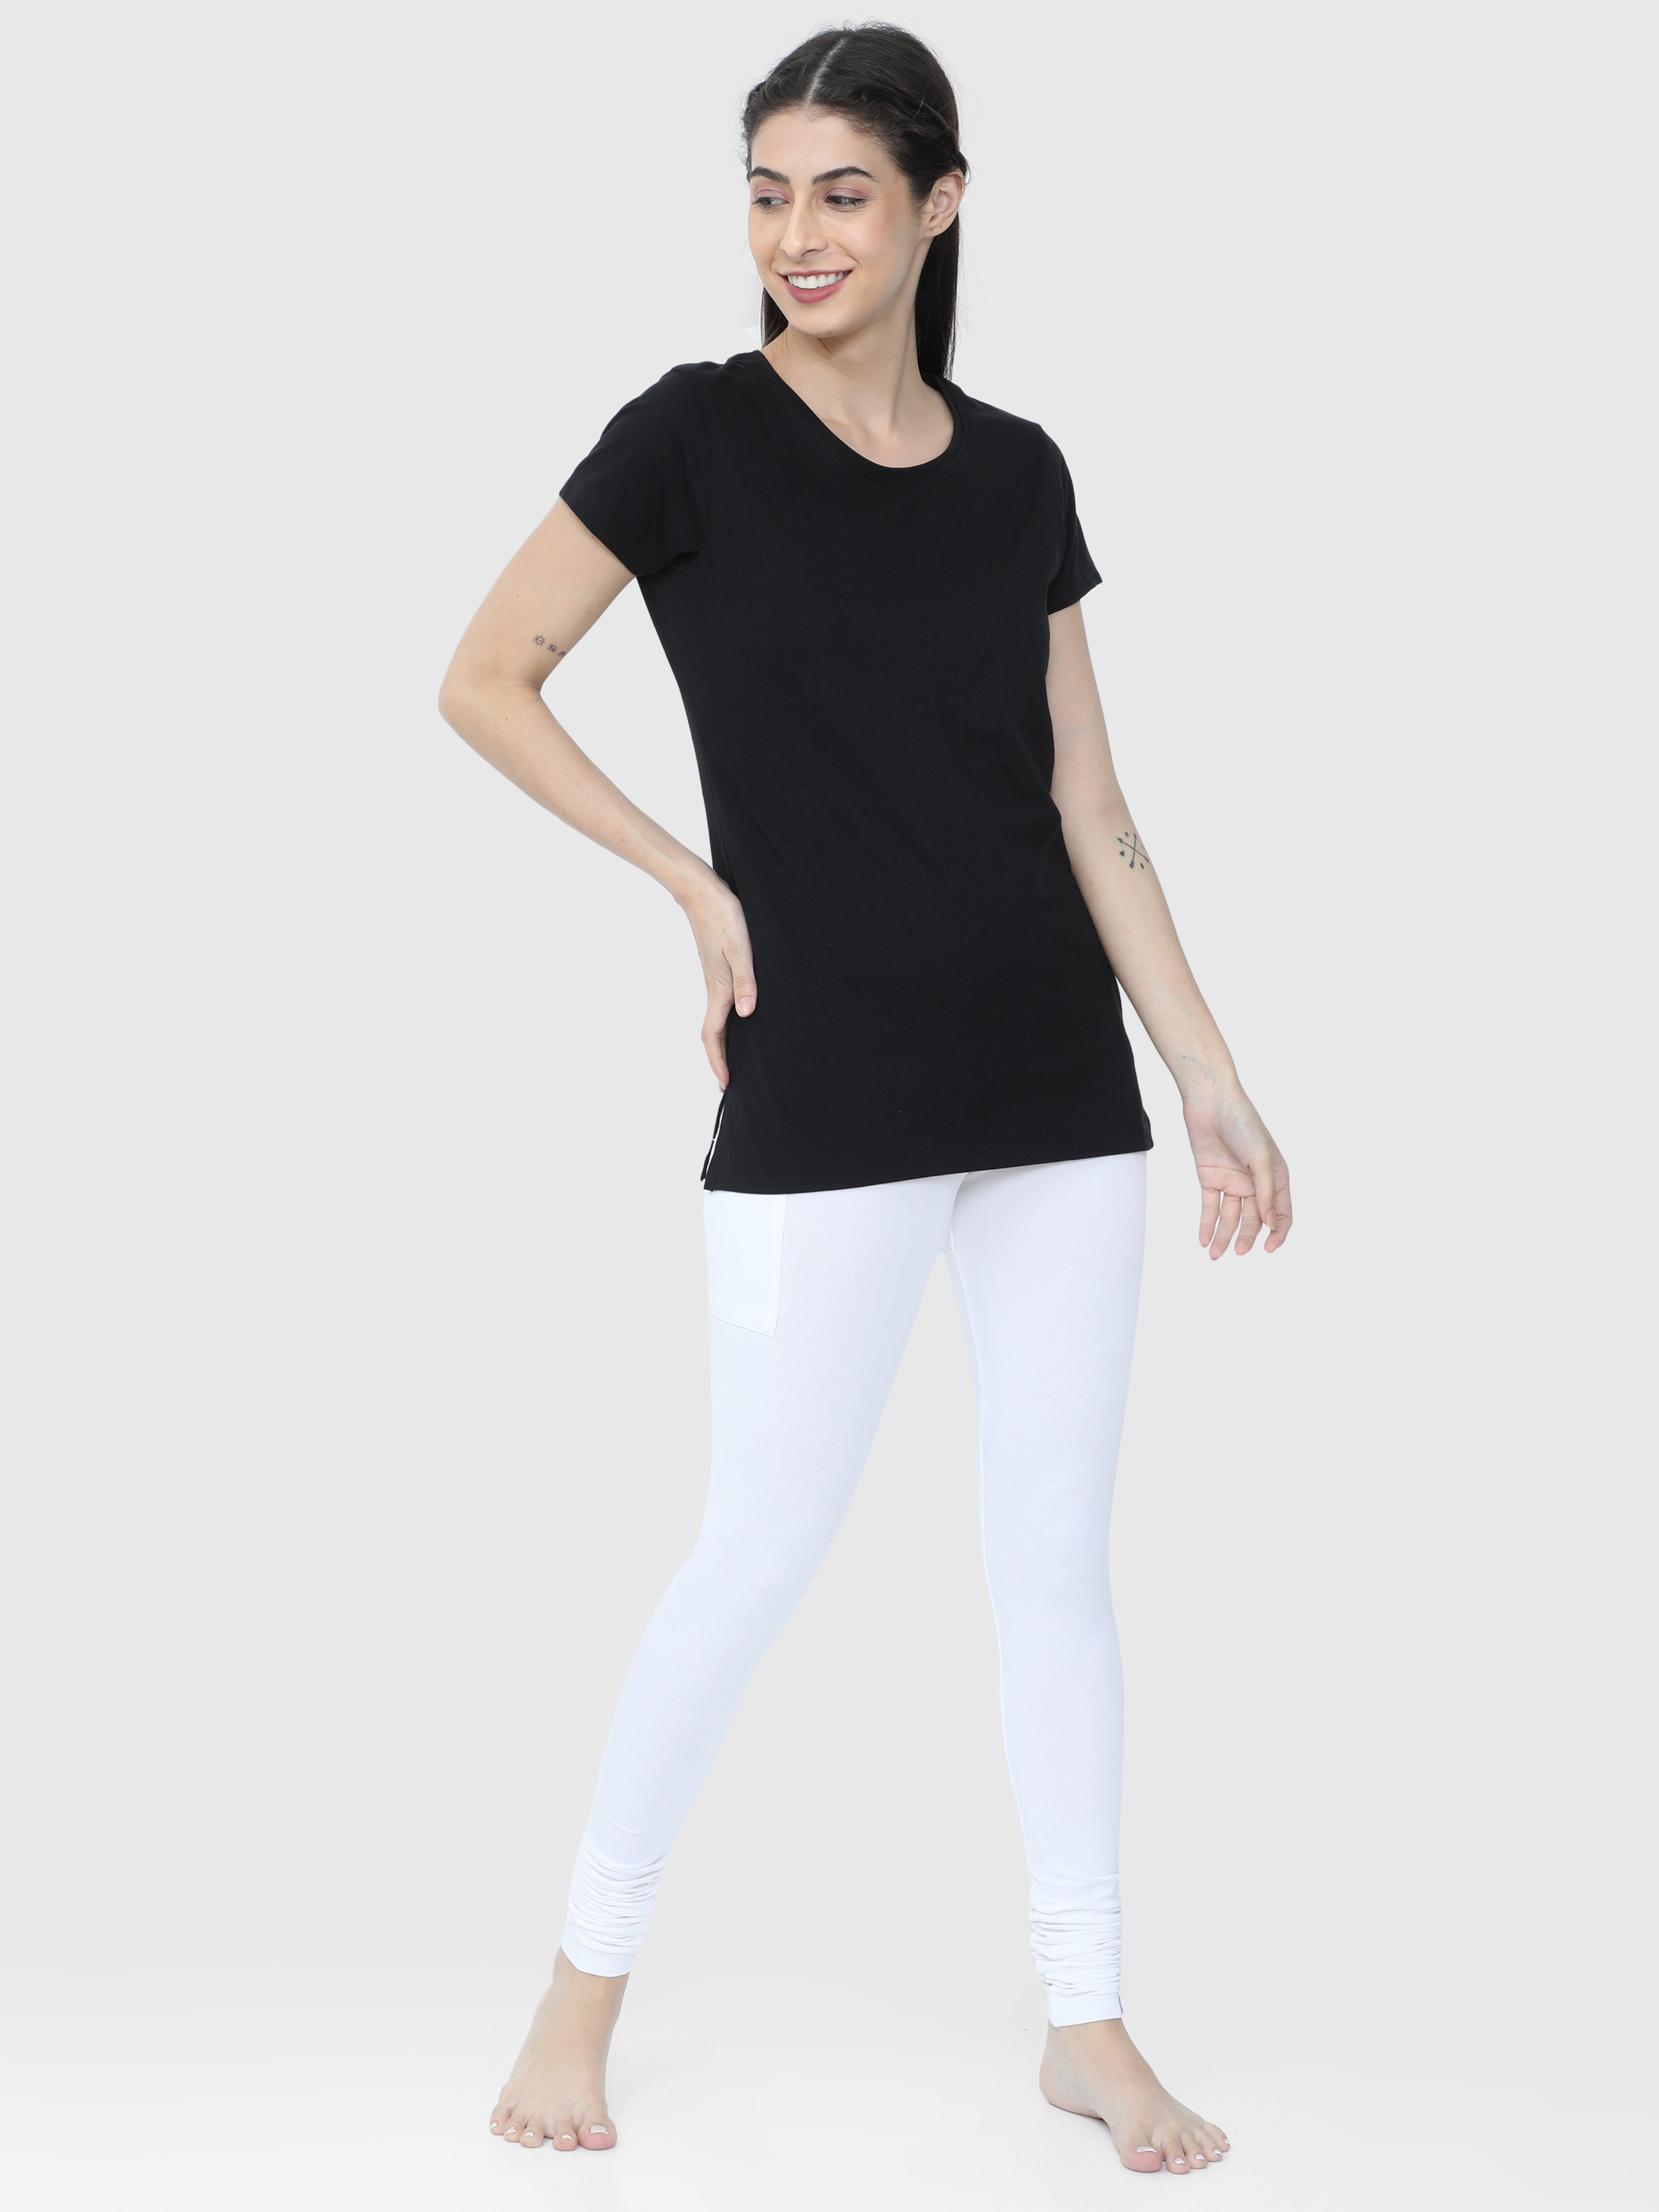 NEVA Women Round Neck Gym Sports T-Shirt- Black – Neva Clothing India